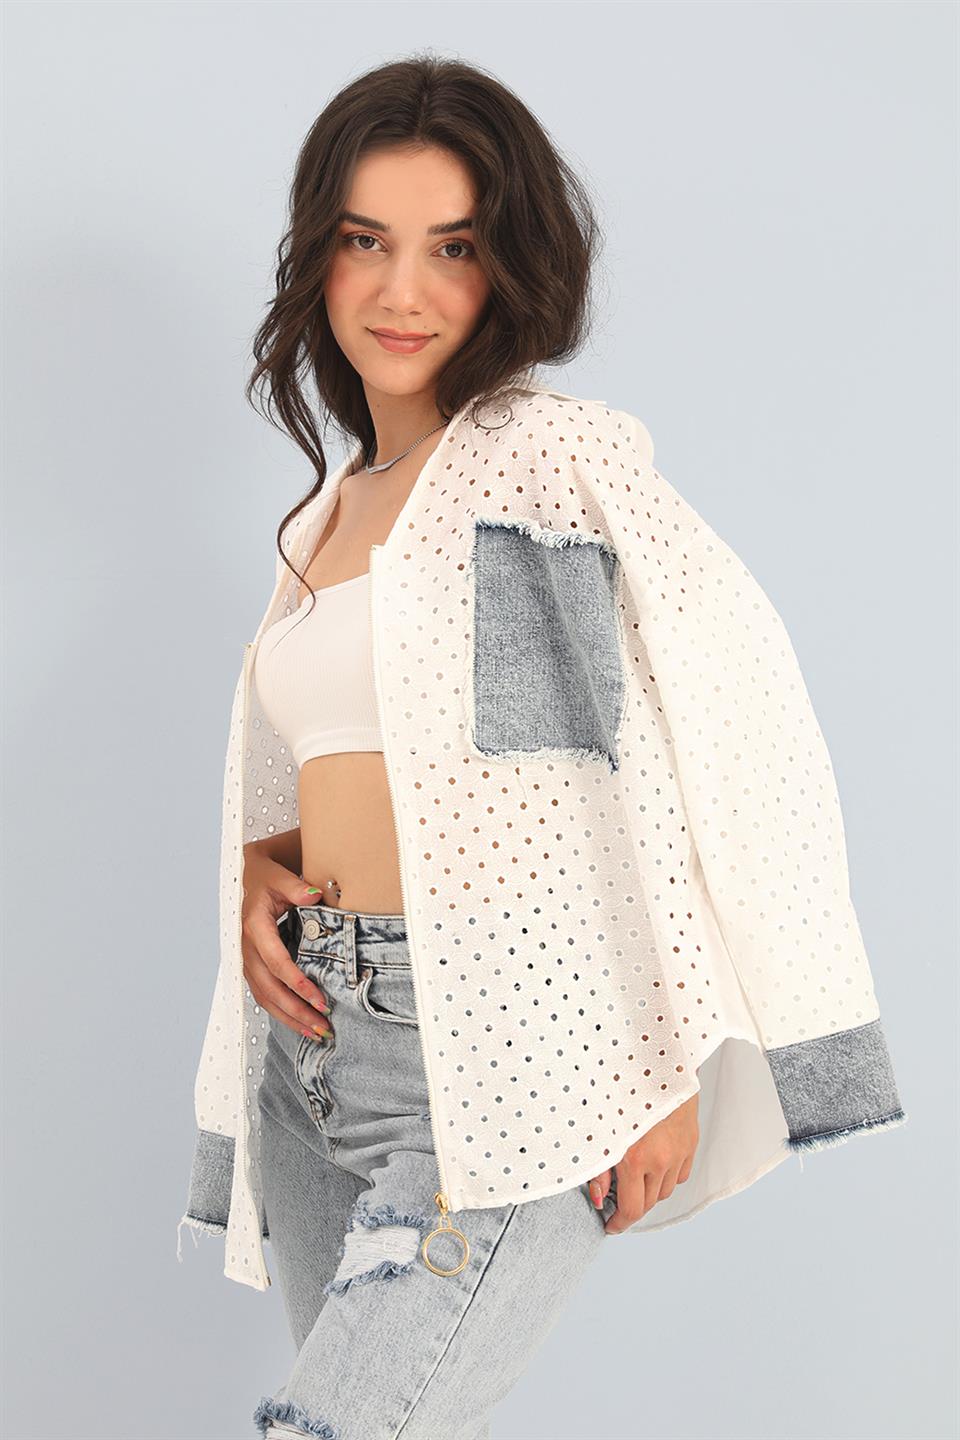 Women's Shirt Embroidered Denim Garnish Floral Pattern - White - STREET MODE ™